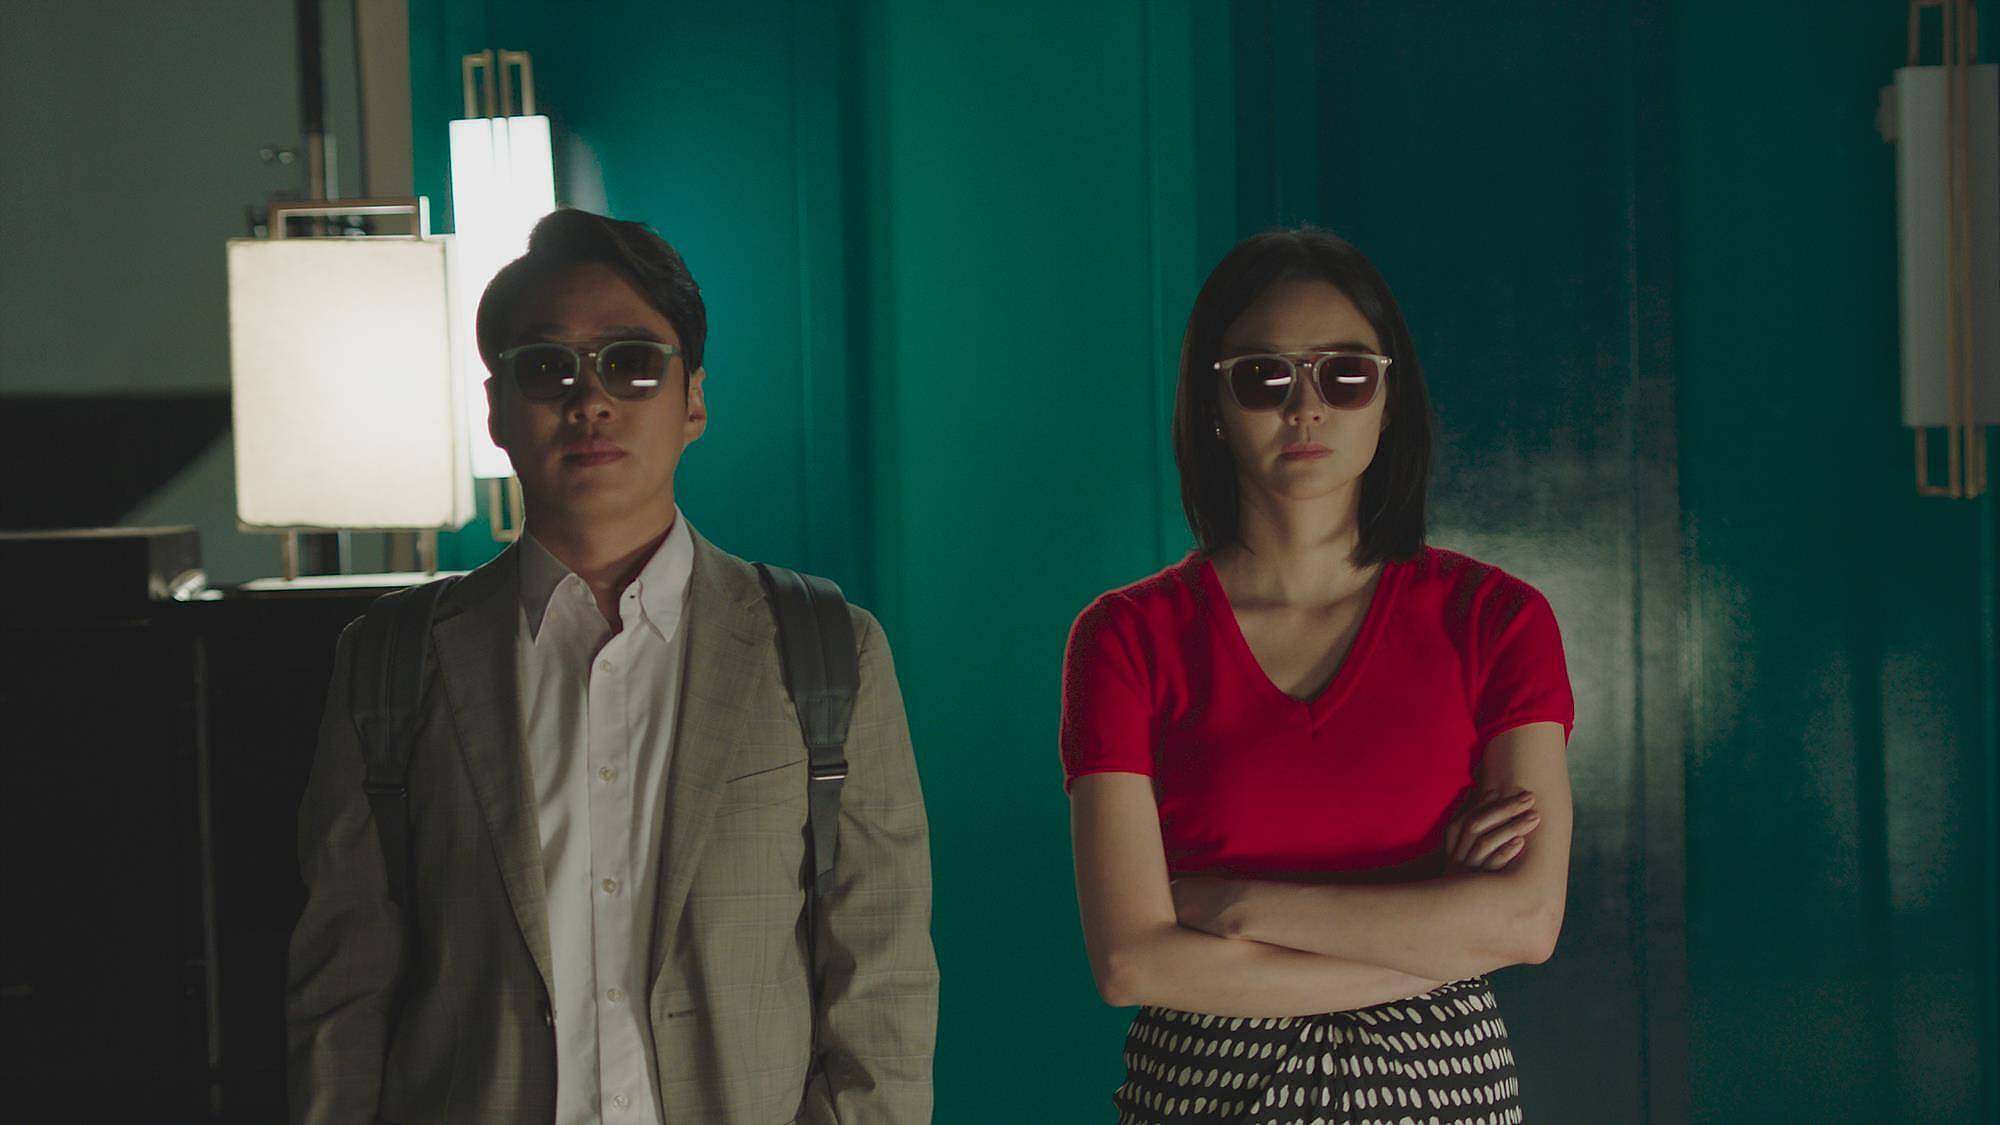 Doona!: Suzy é ex-estrela do k-pop no trailer do k-drama da Netflix